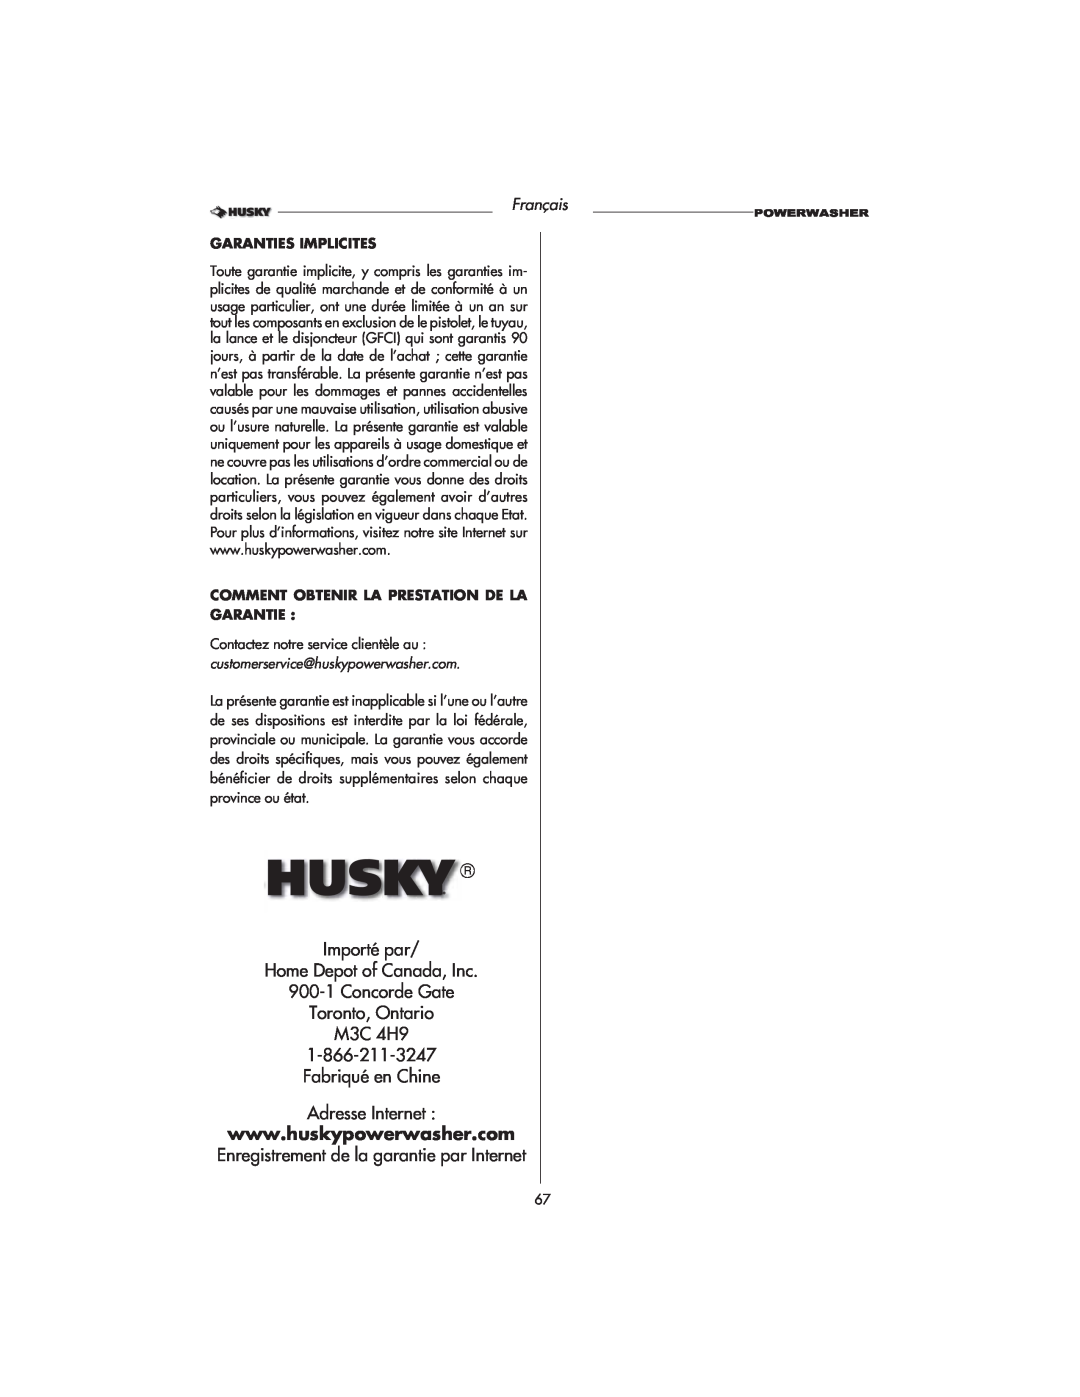 Husky HD1500 warranty Importé par Home Depot of Canada, Inc, 900-1Concorde Gate Toronto, Ontario M3C 4H9, Français 